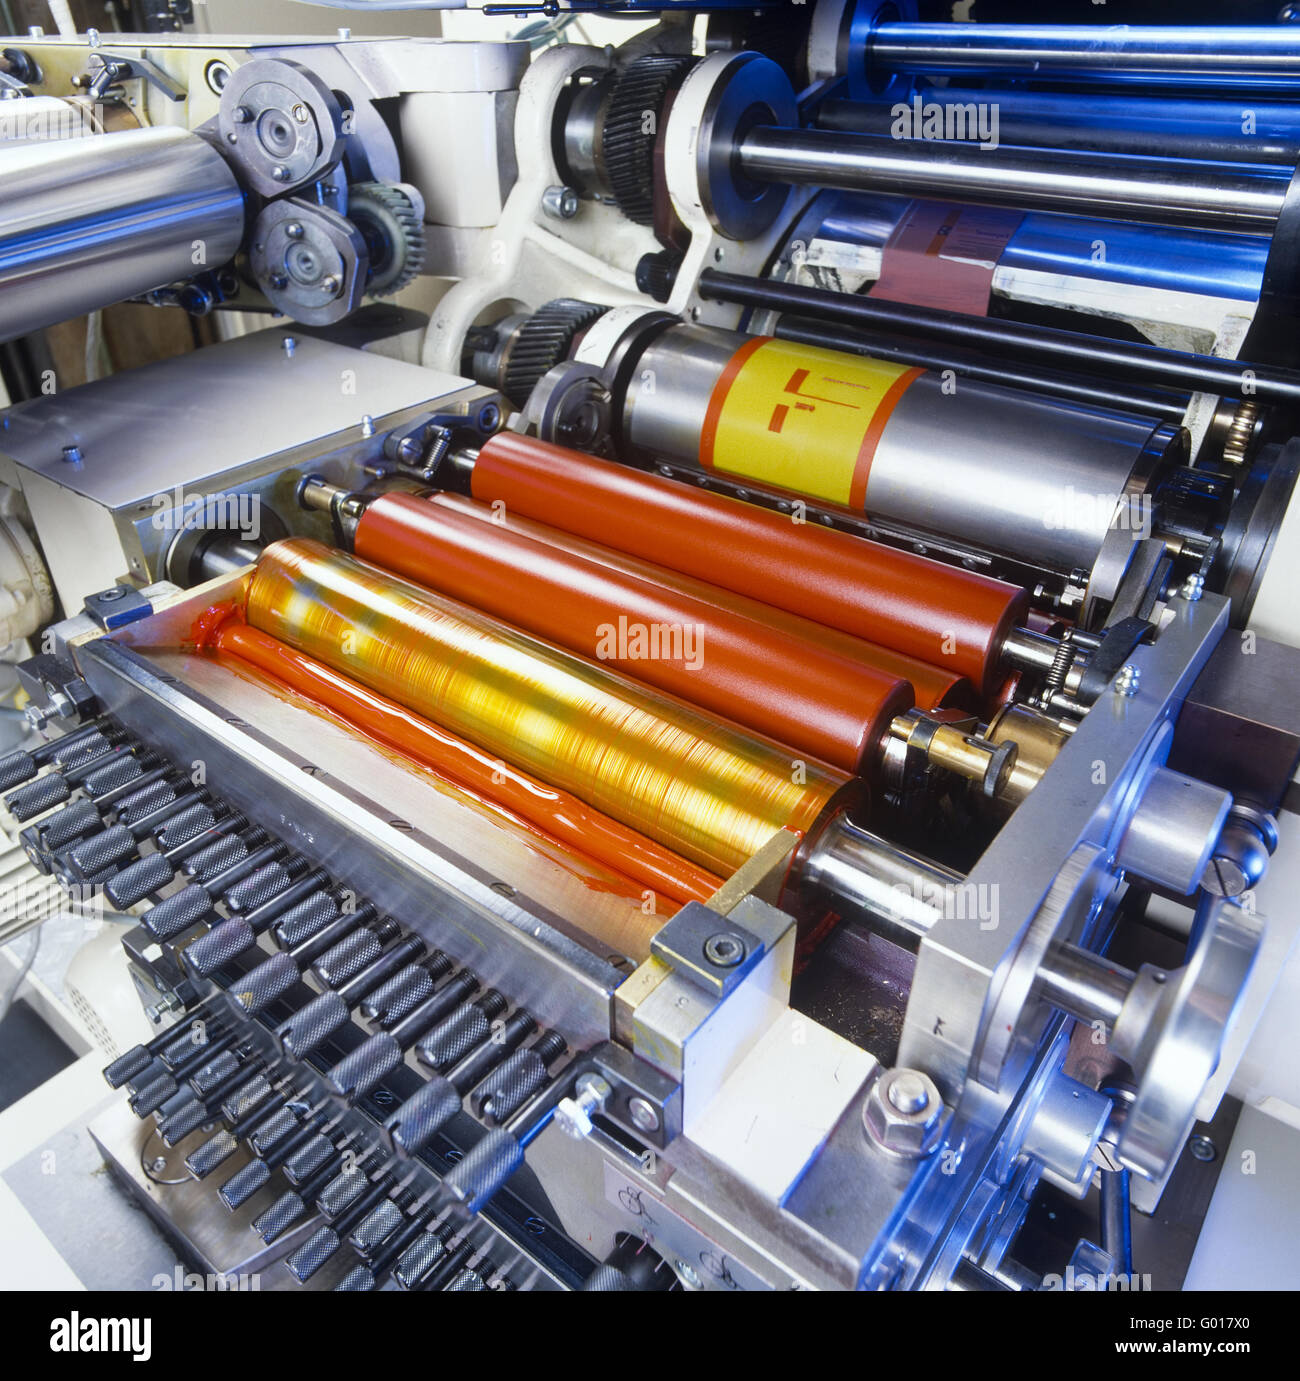 printing machine Stock Photo